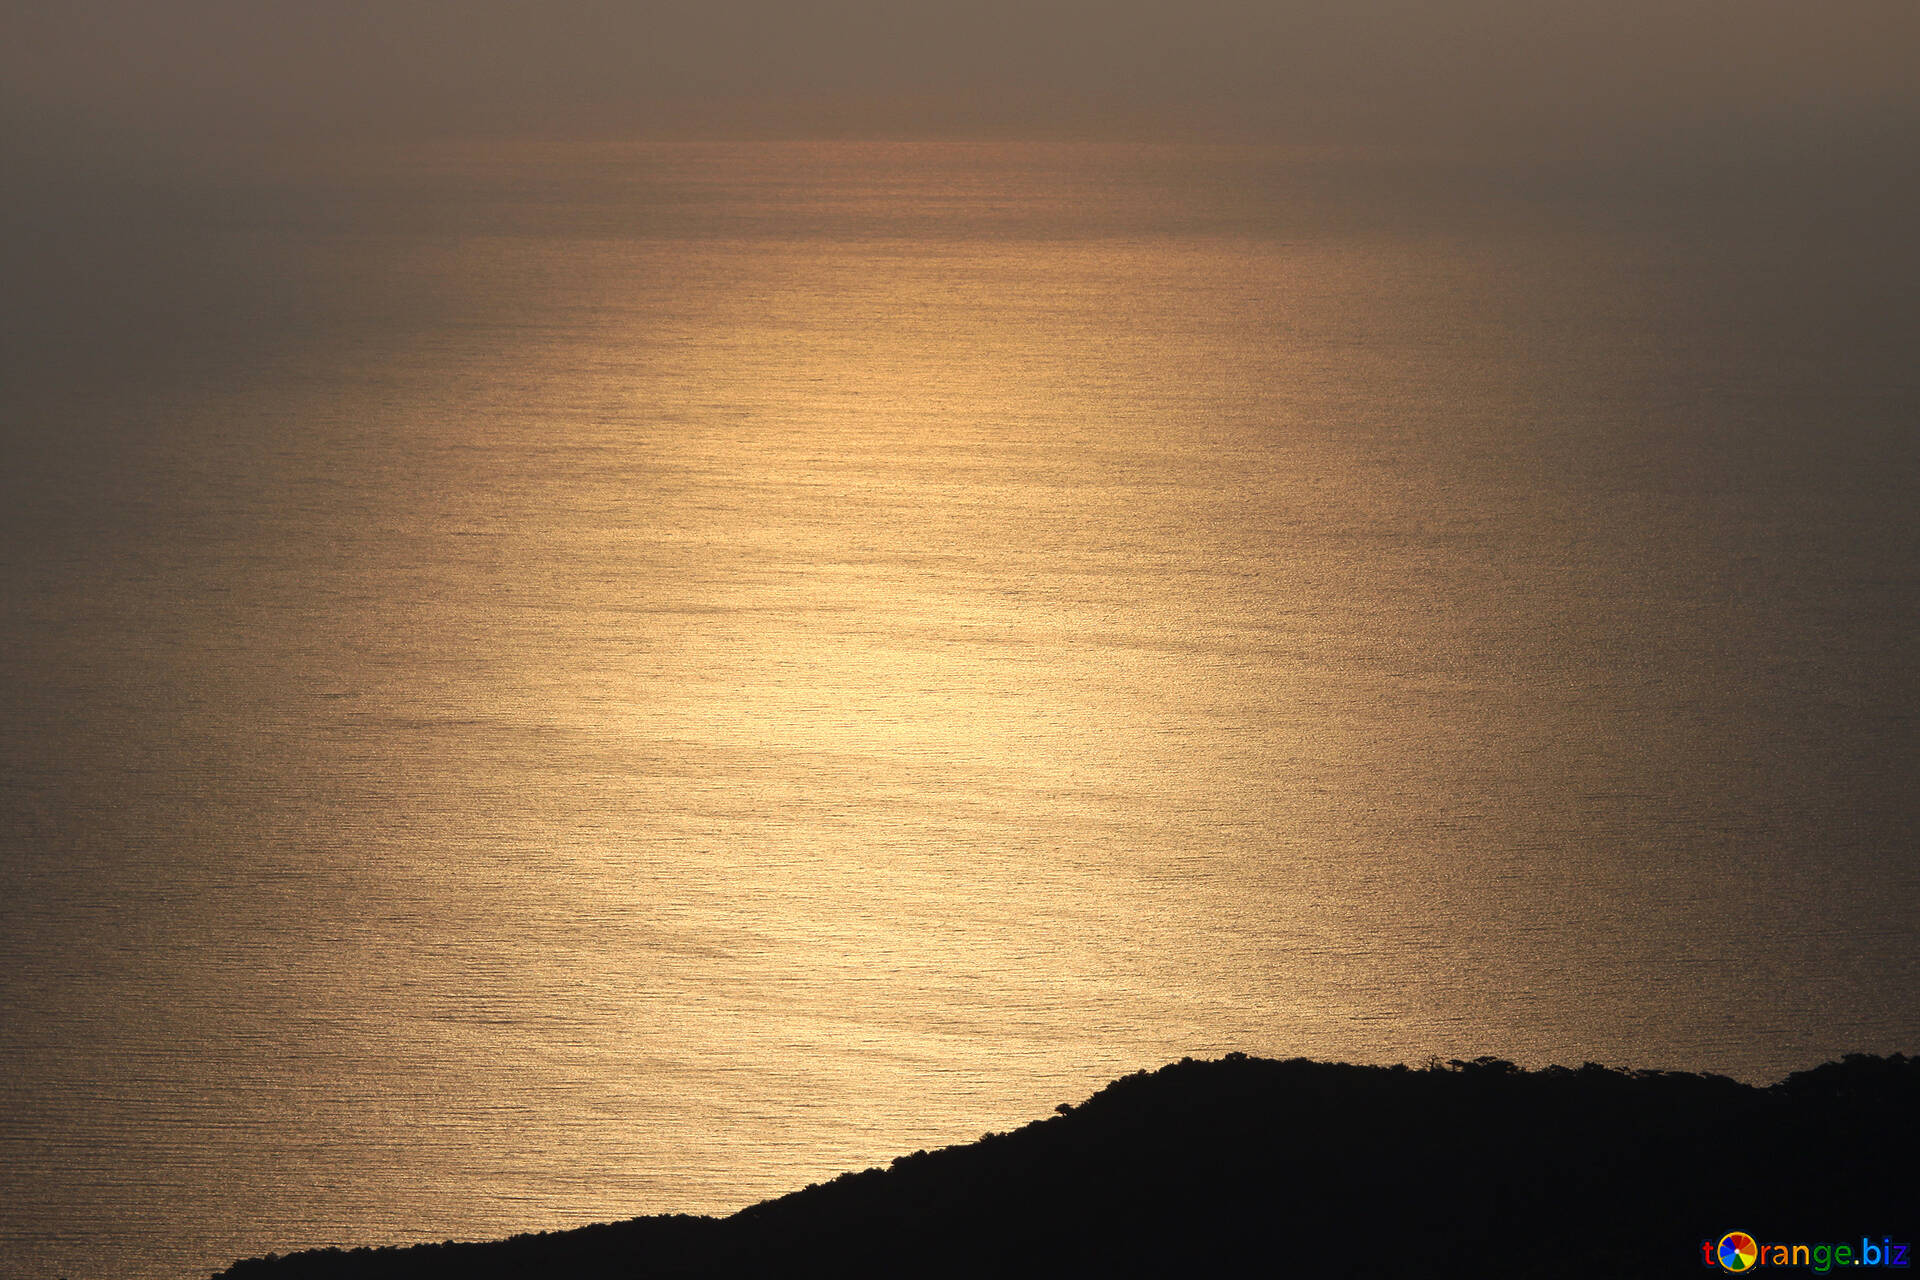 日の出 無料の写真 海 日の出 無料の写真 天国 2268 Torange Biz